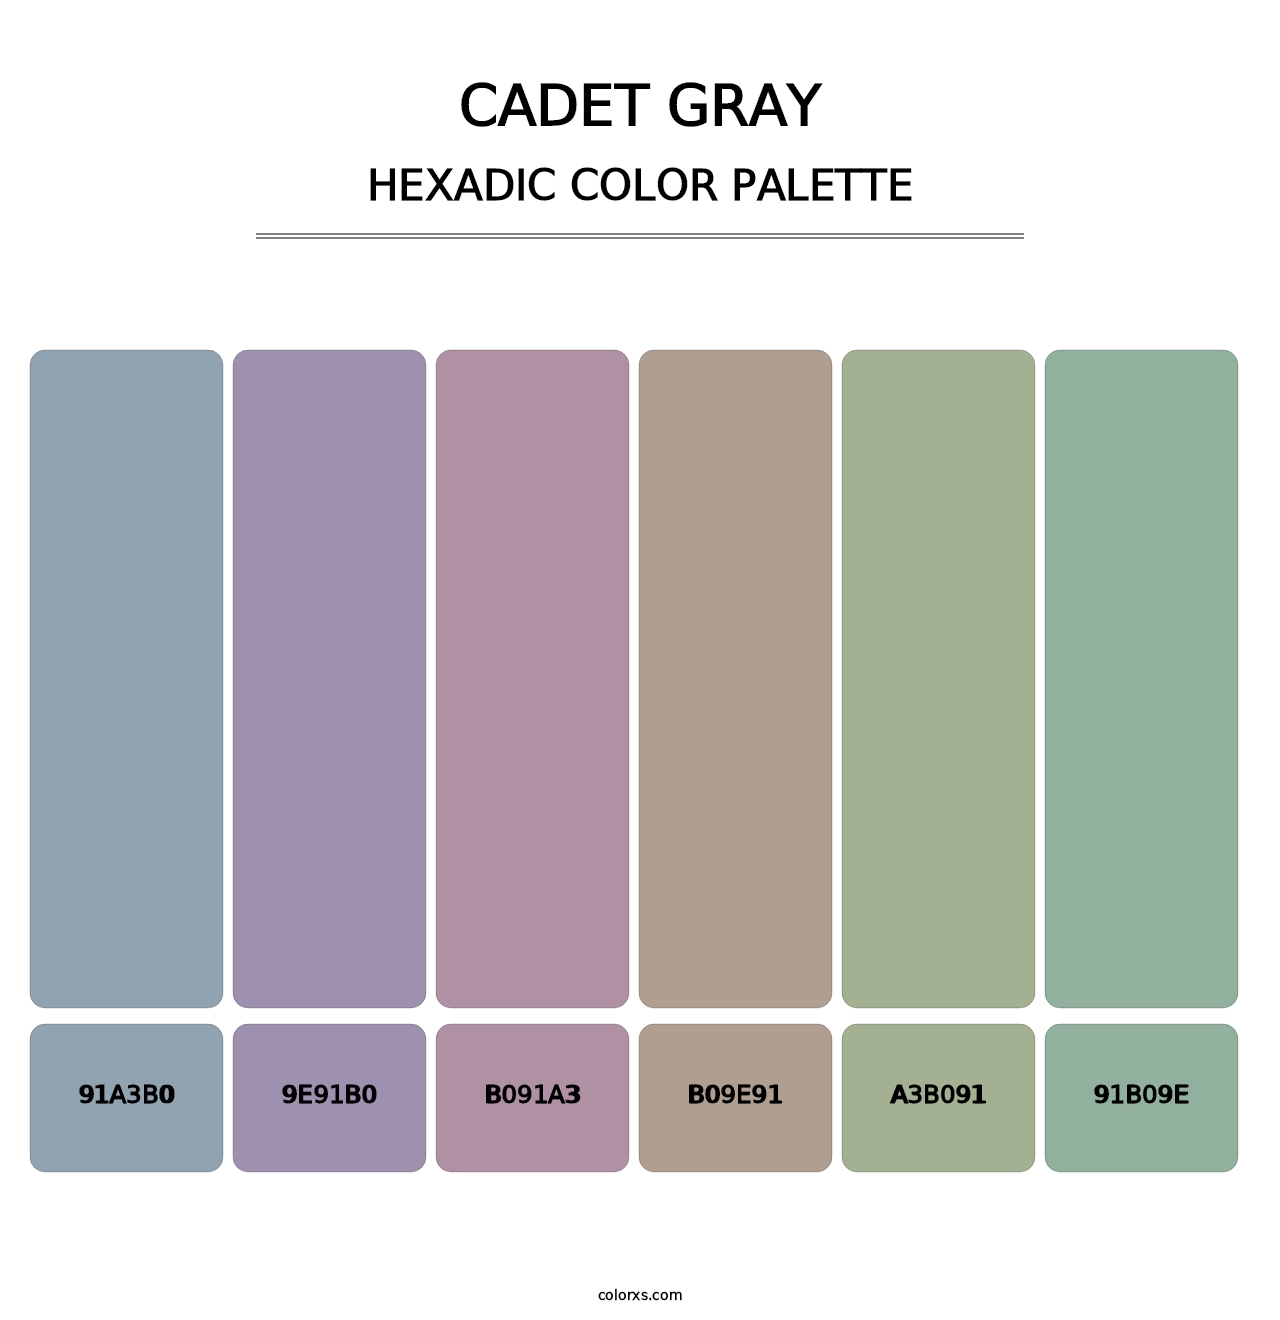 Cadet Gray - Hexadic Color Palette